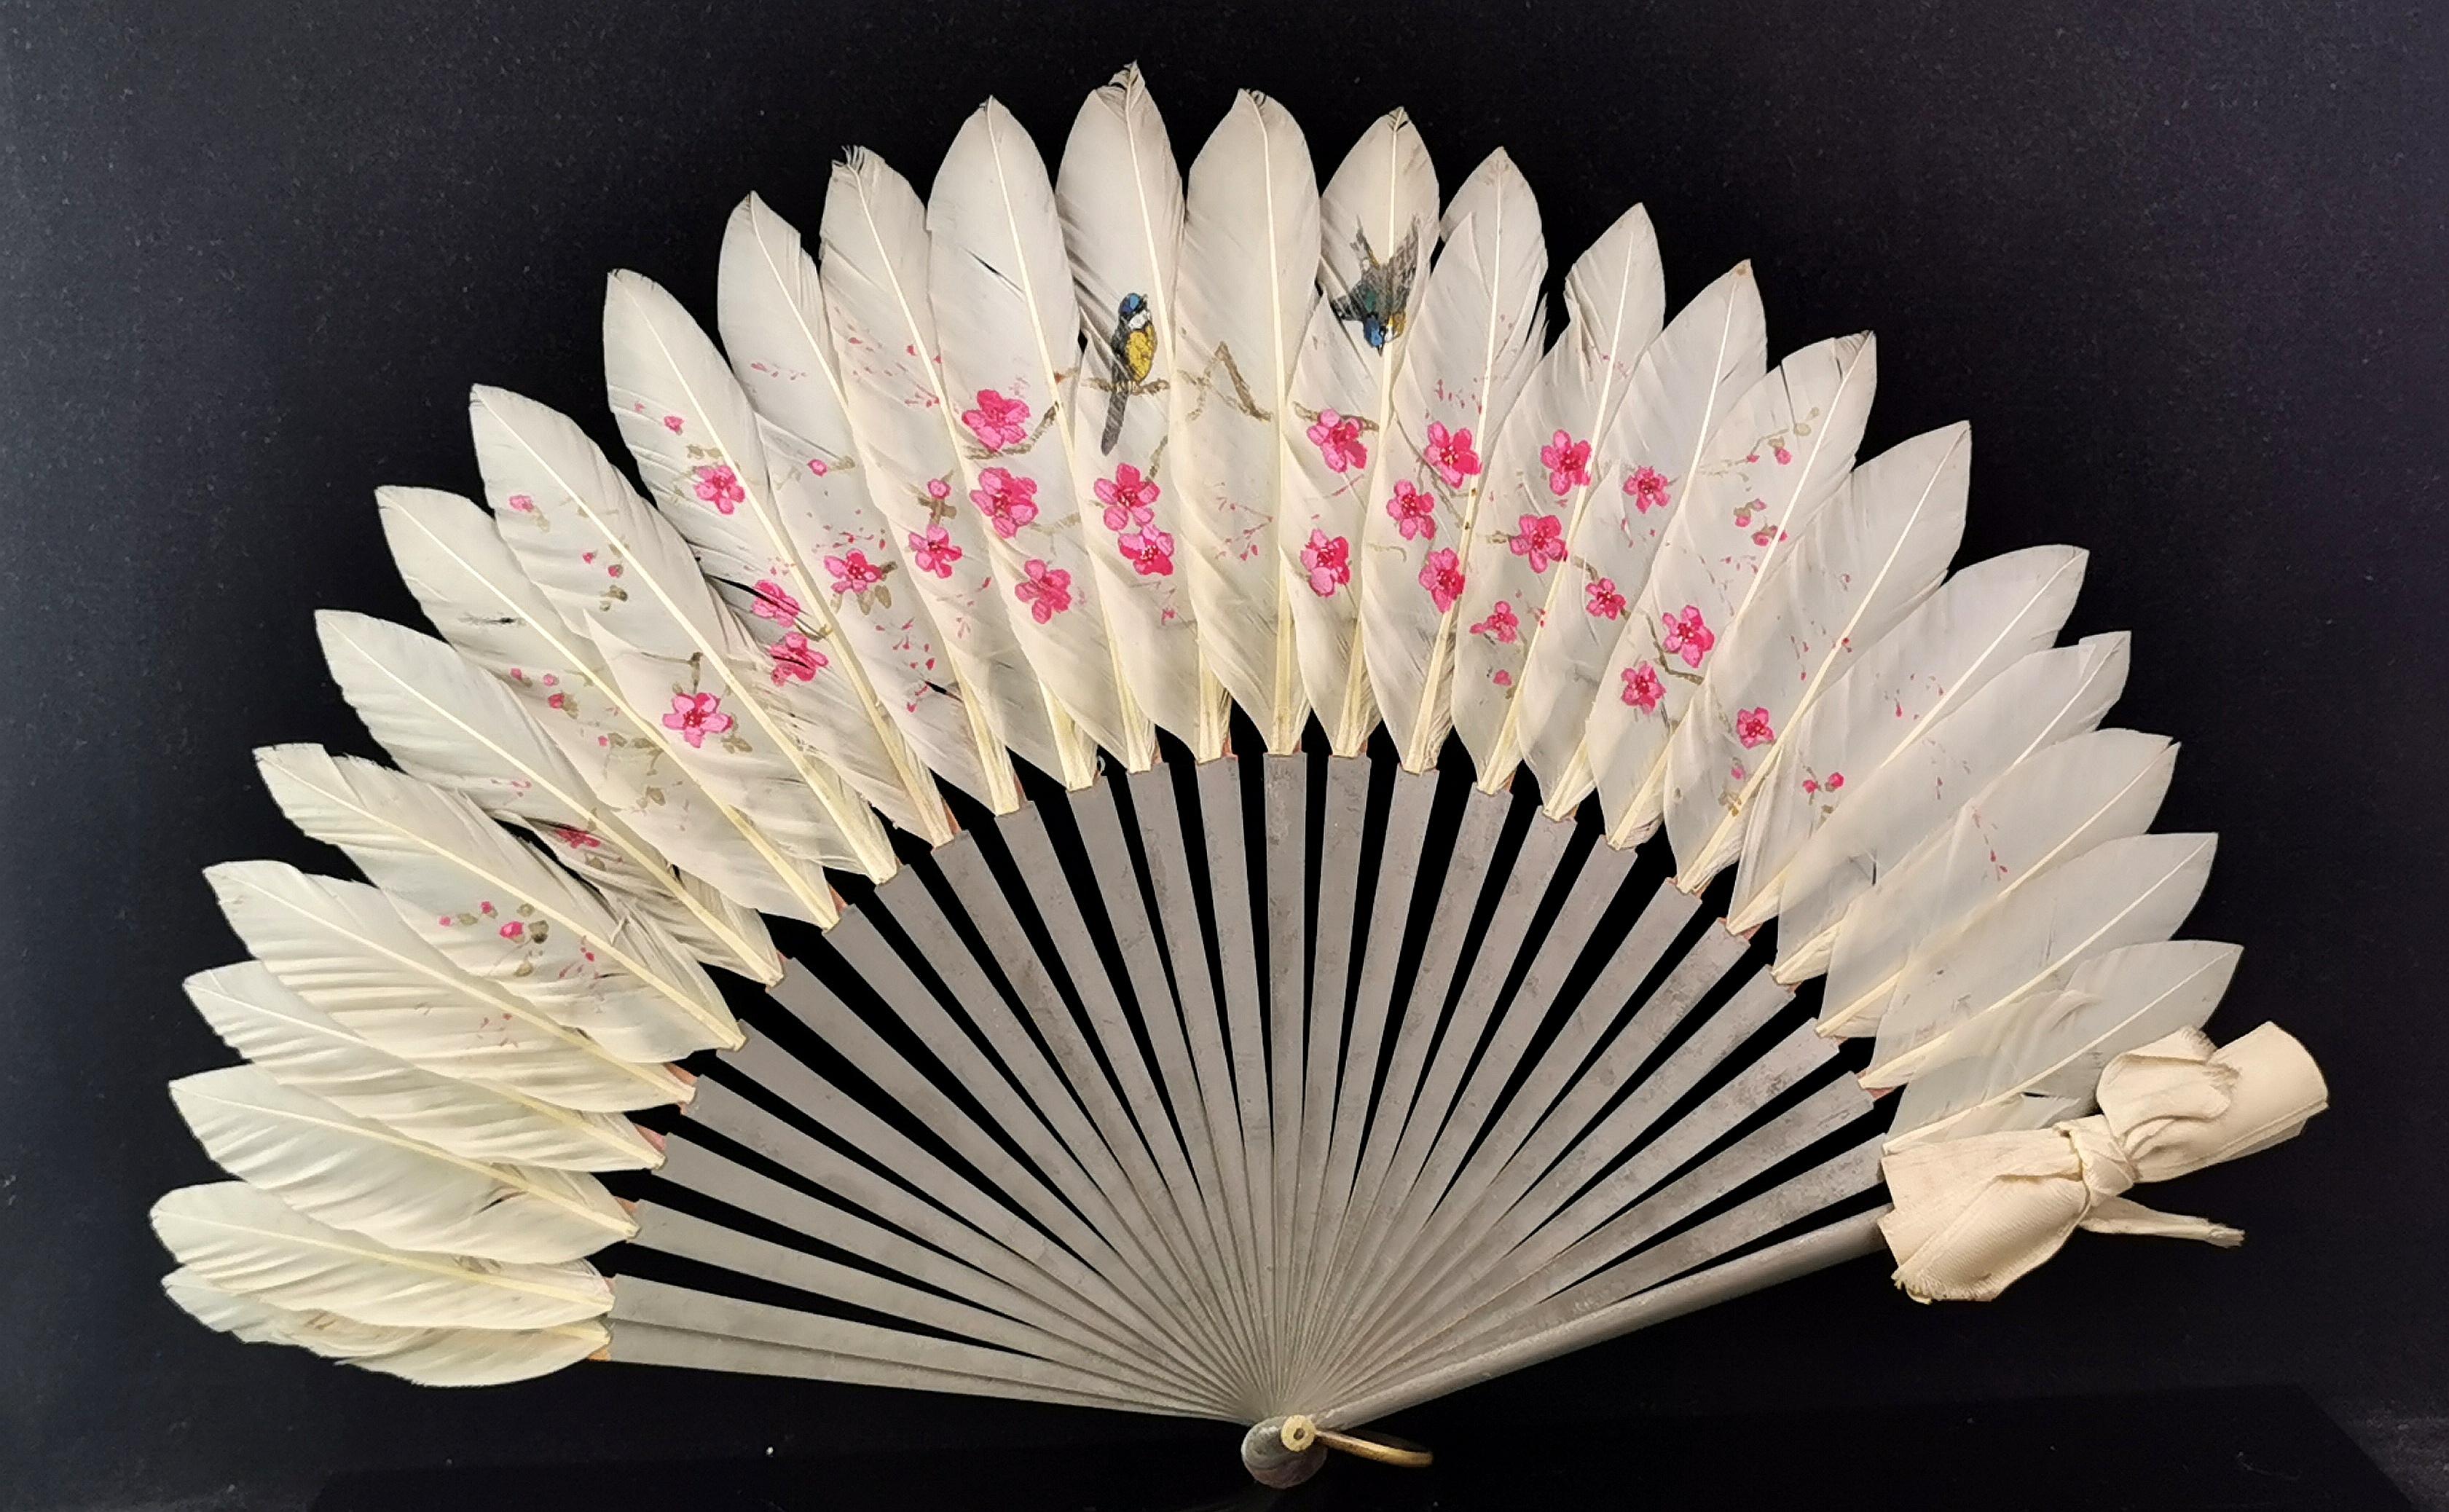 Magnifique éventail à main chinois ancien en plumes.

L'éventail est fait de plumes d'oie blanc cassé, attachées à des bâtons et des gardes en bois peints en argent.

Les plumes sont ornées d'une magnifique scène peinte à la main représentant des